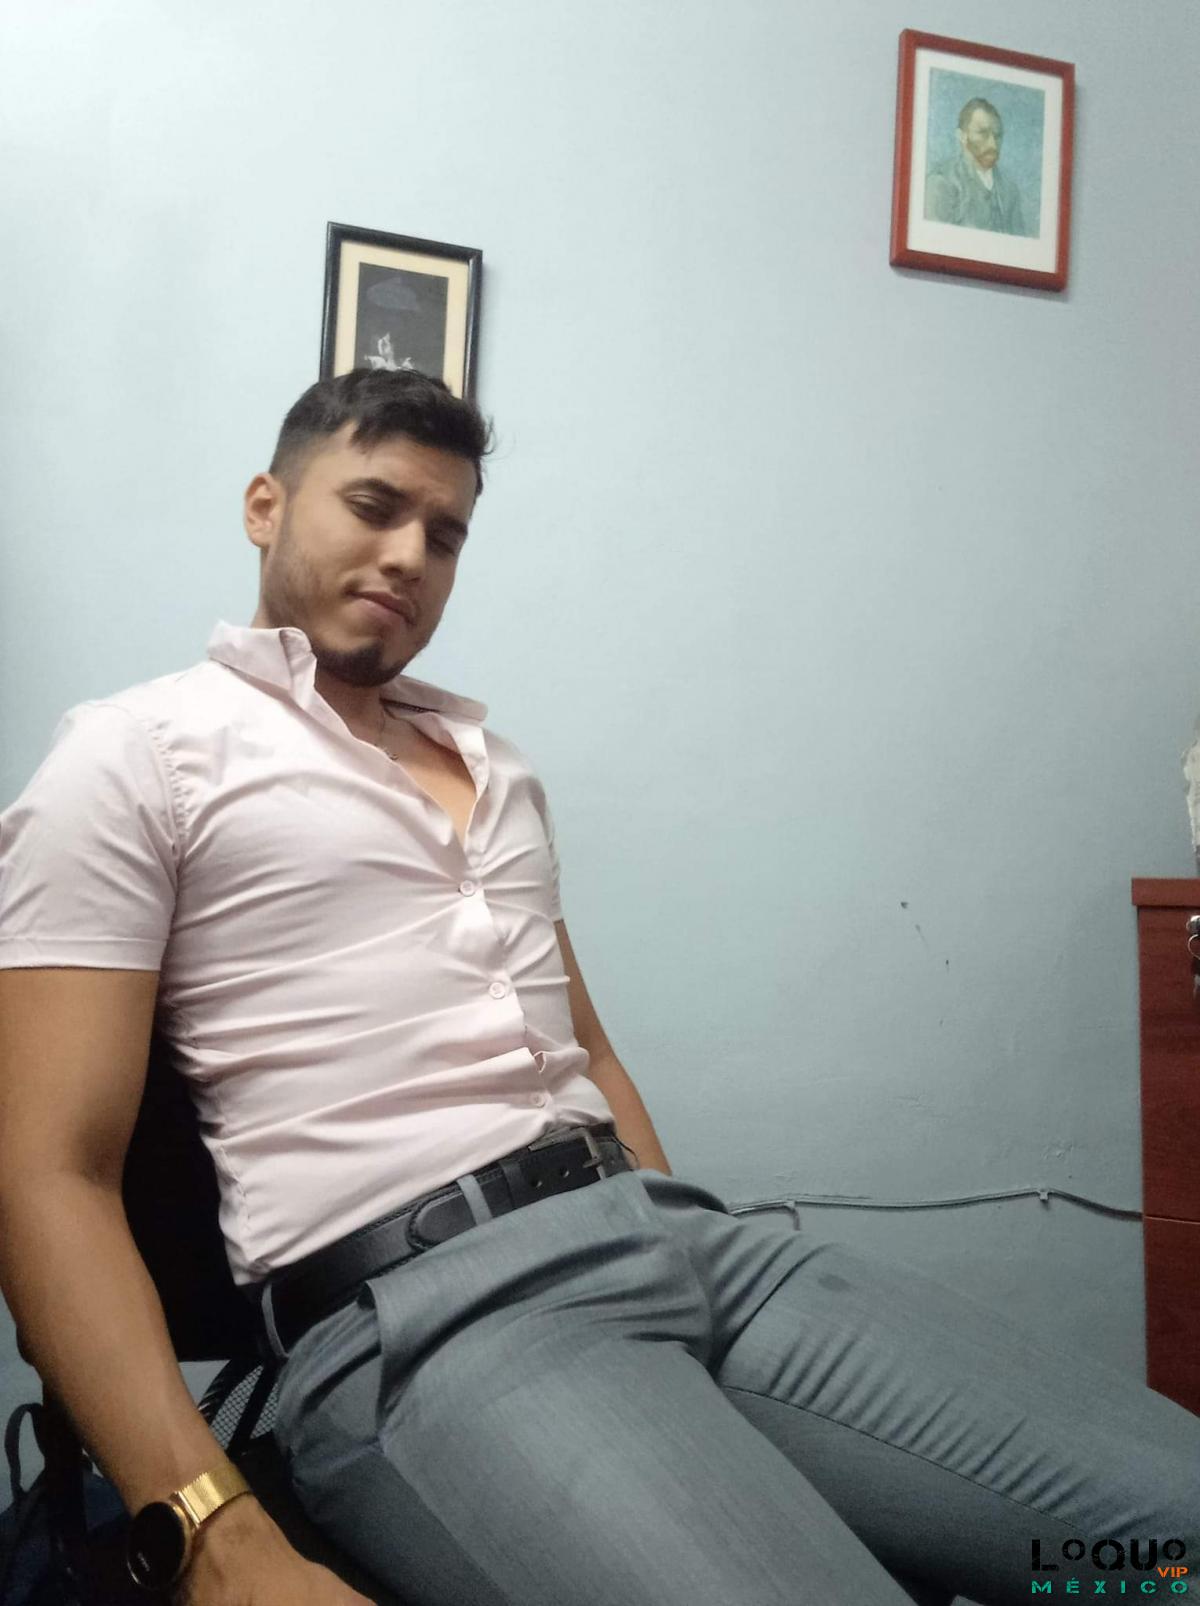 Escorts Gay Chiapas: RITCHIE JOVEN ATRACTIVO MACHITO BUEN FÍSICO BUENA VERGA SERVICIO INTIMO